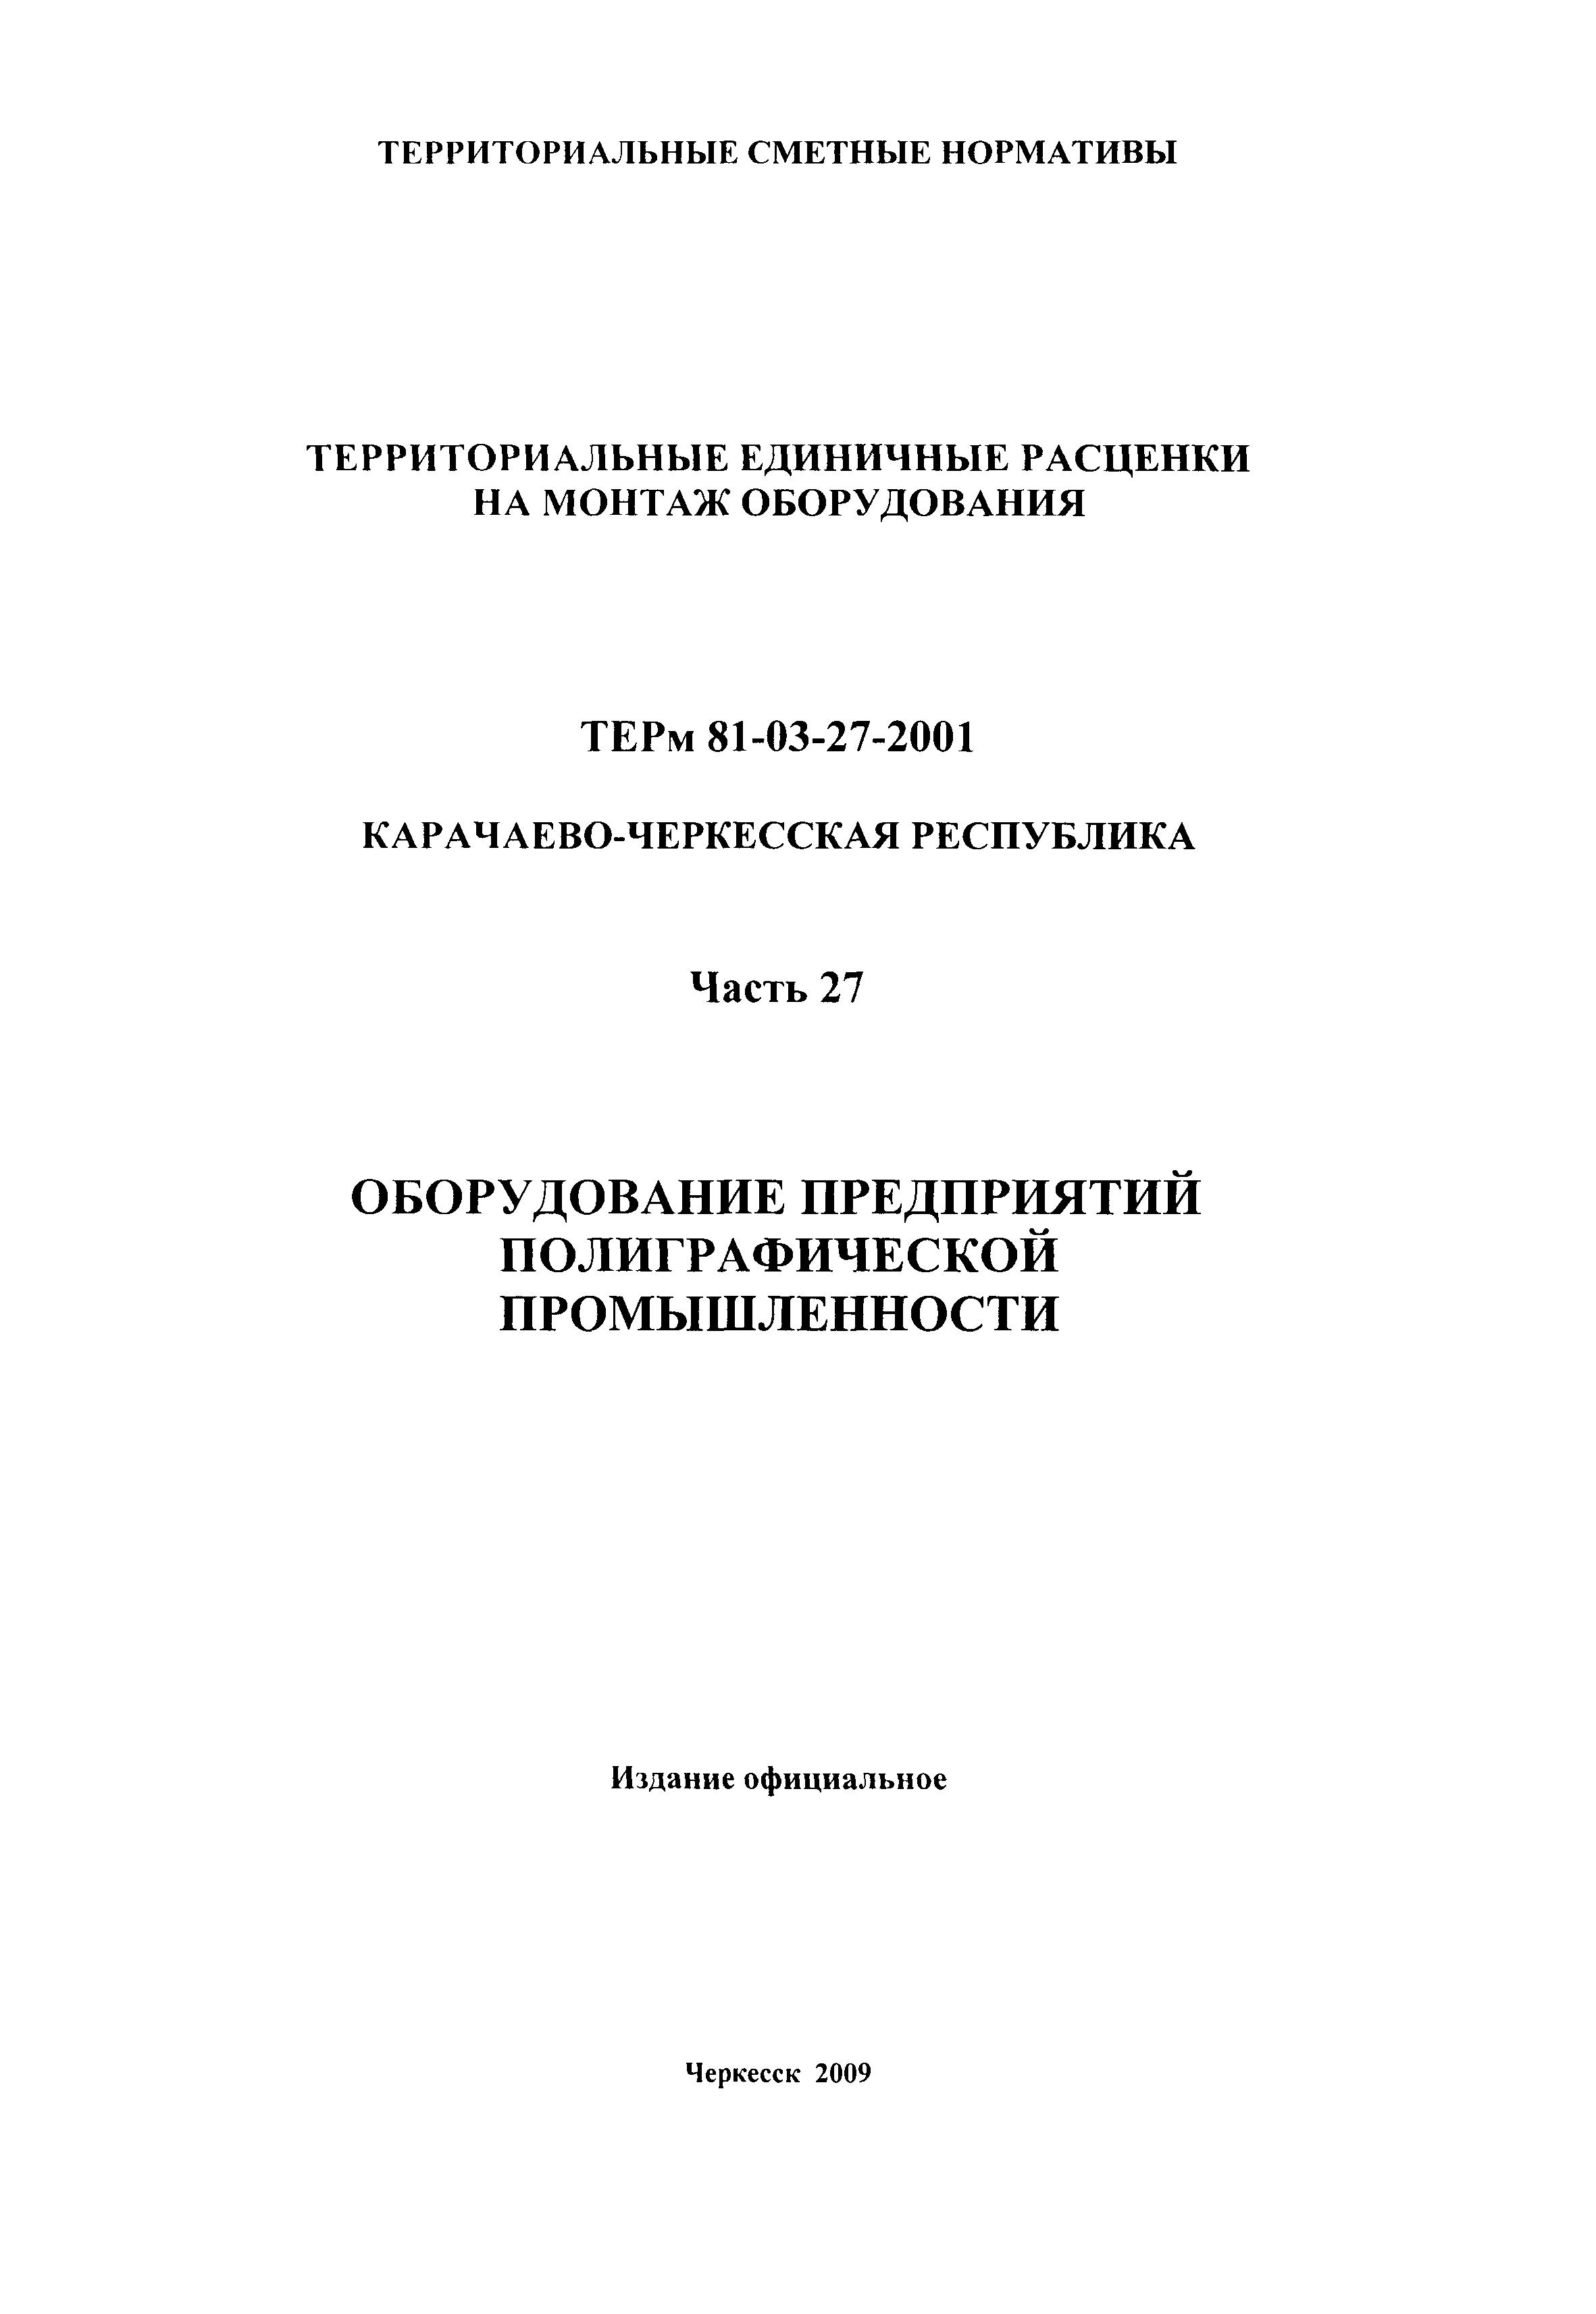 ТЕРм Карачаево-Черкесская Республика 27-2001